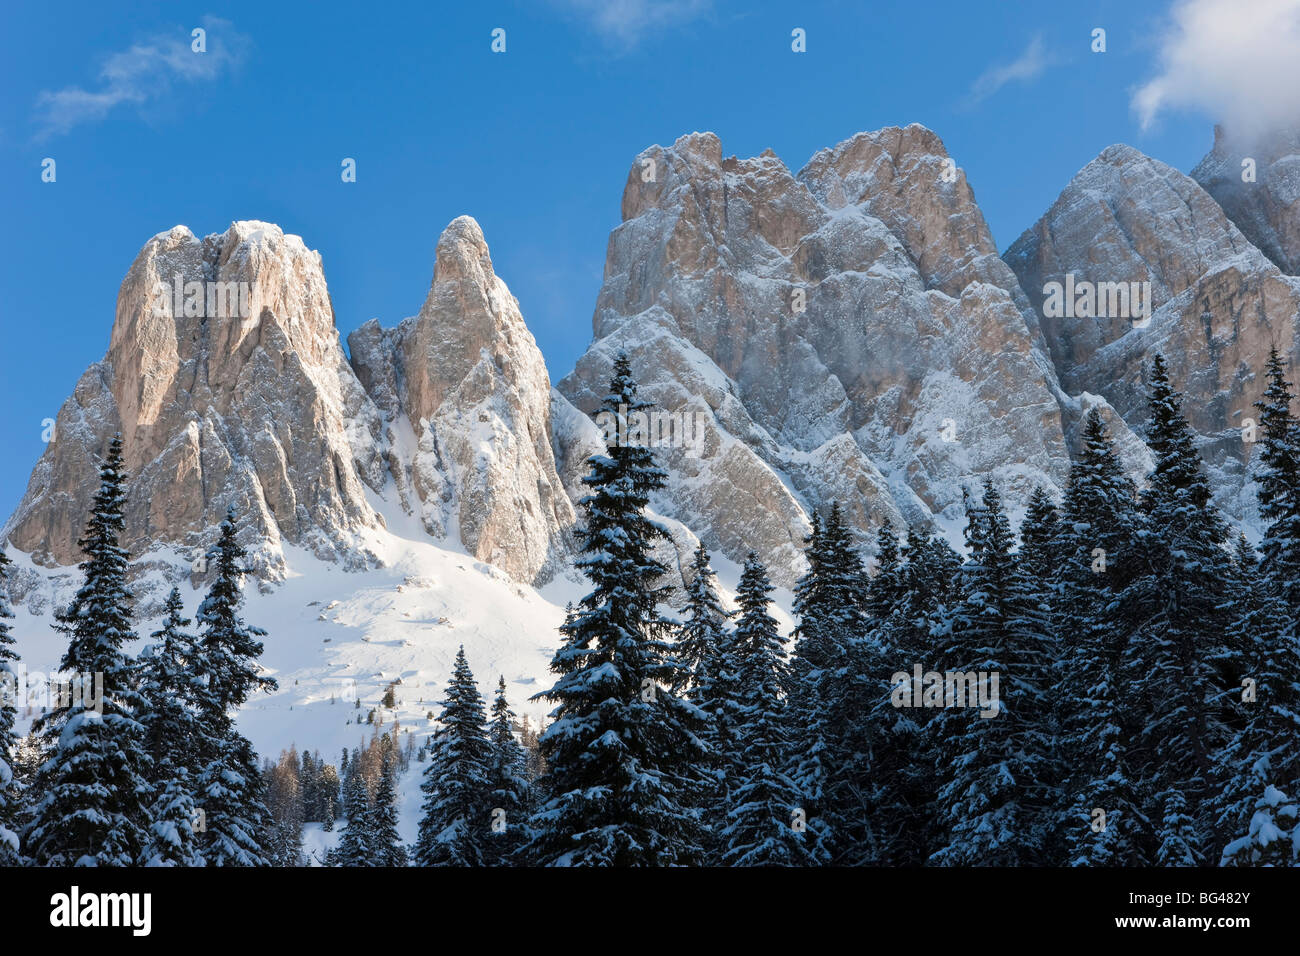 Le Odle Group / Geisler Spitzen, Val di Funes, Italian Dolomites mountains, Trentino-Alto Adige (South Tirol), Italy Stock Photo